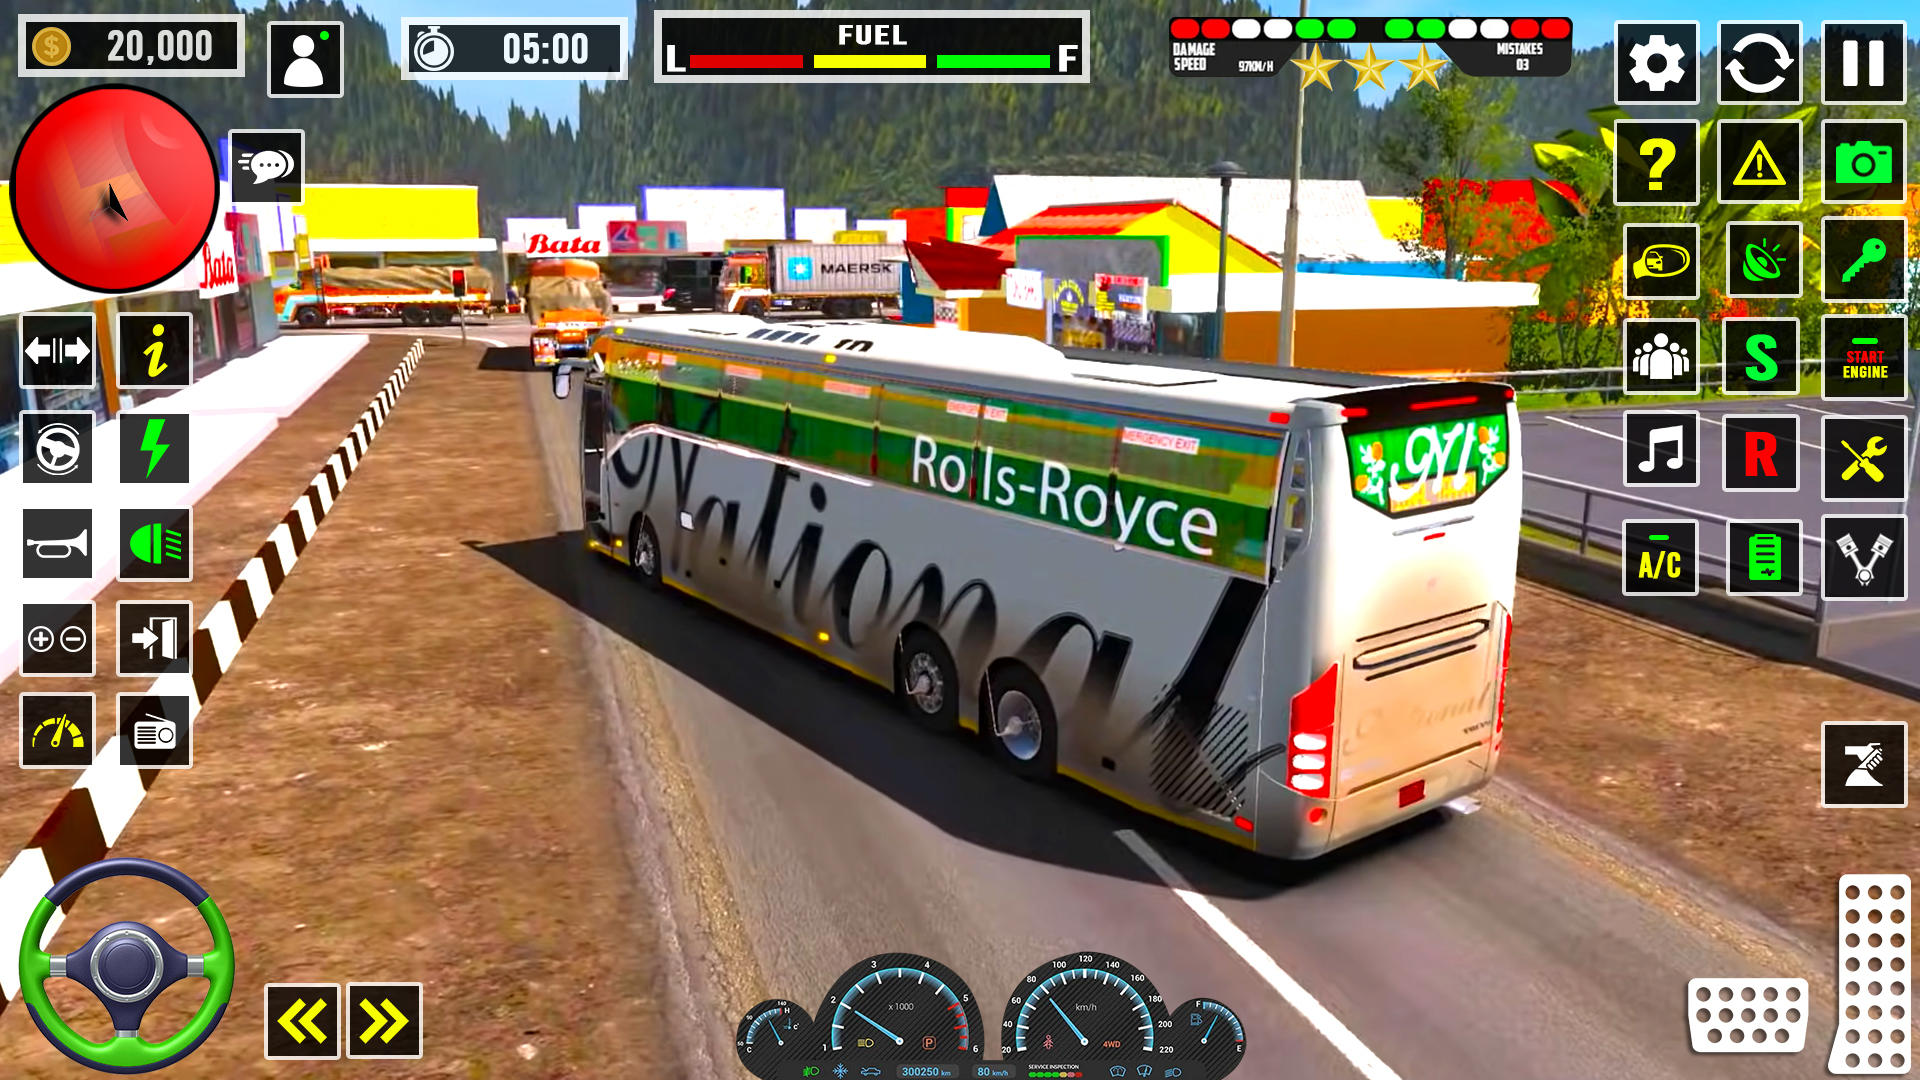 Screenshot 1 of Игры с тренером из США по вождению автобуса 0.1